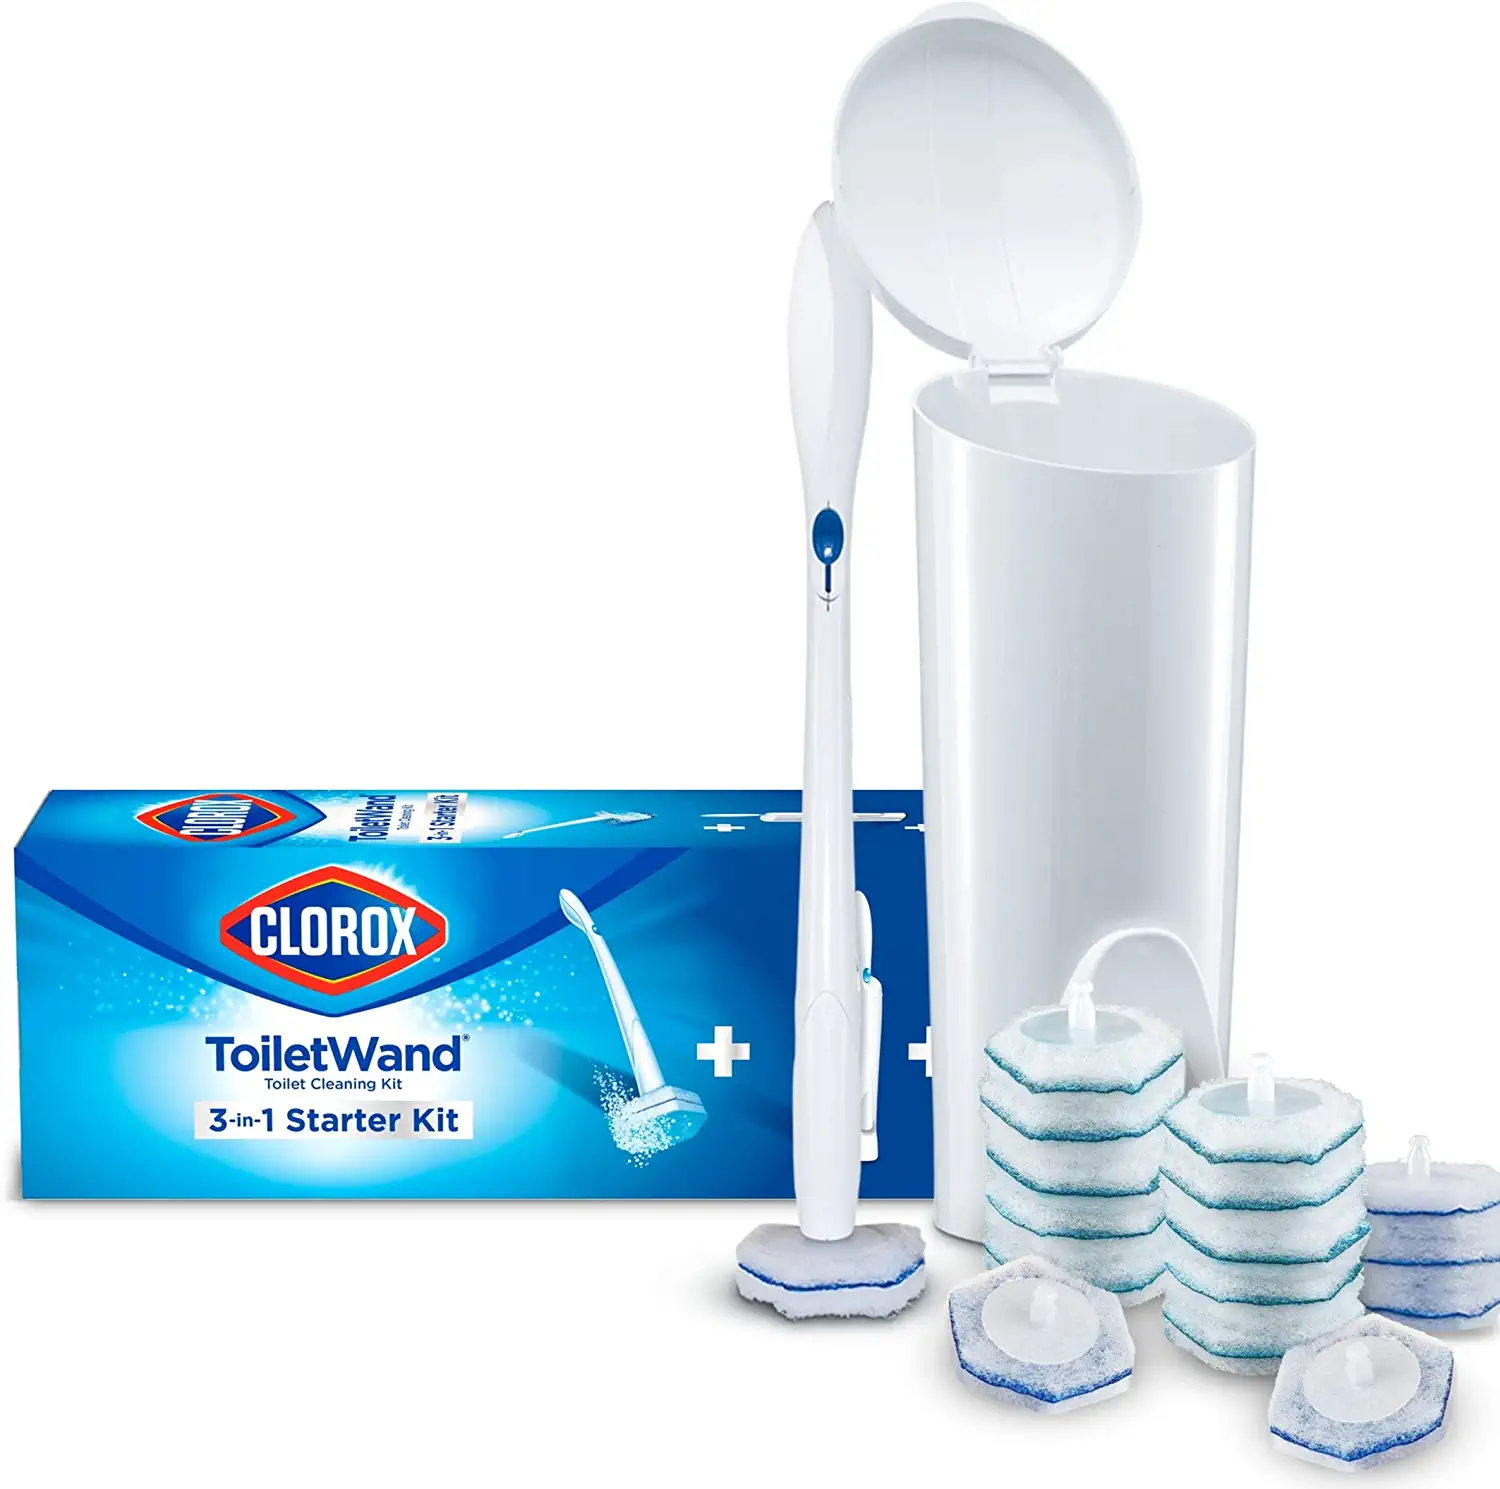 Don Aslett Foam n Flush Toilet Bowl Cleaner (32 Oz Bottle, Pack of 2)  Environmentally Friendly, Biodegradable Organic Acid Formula | Cleans